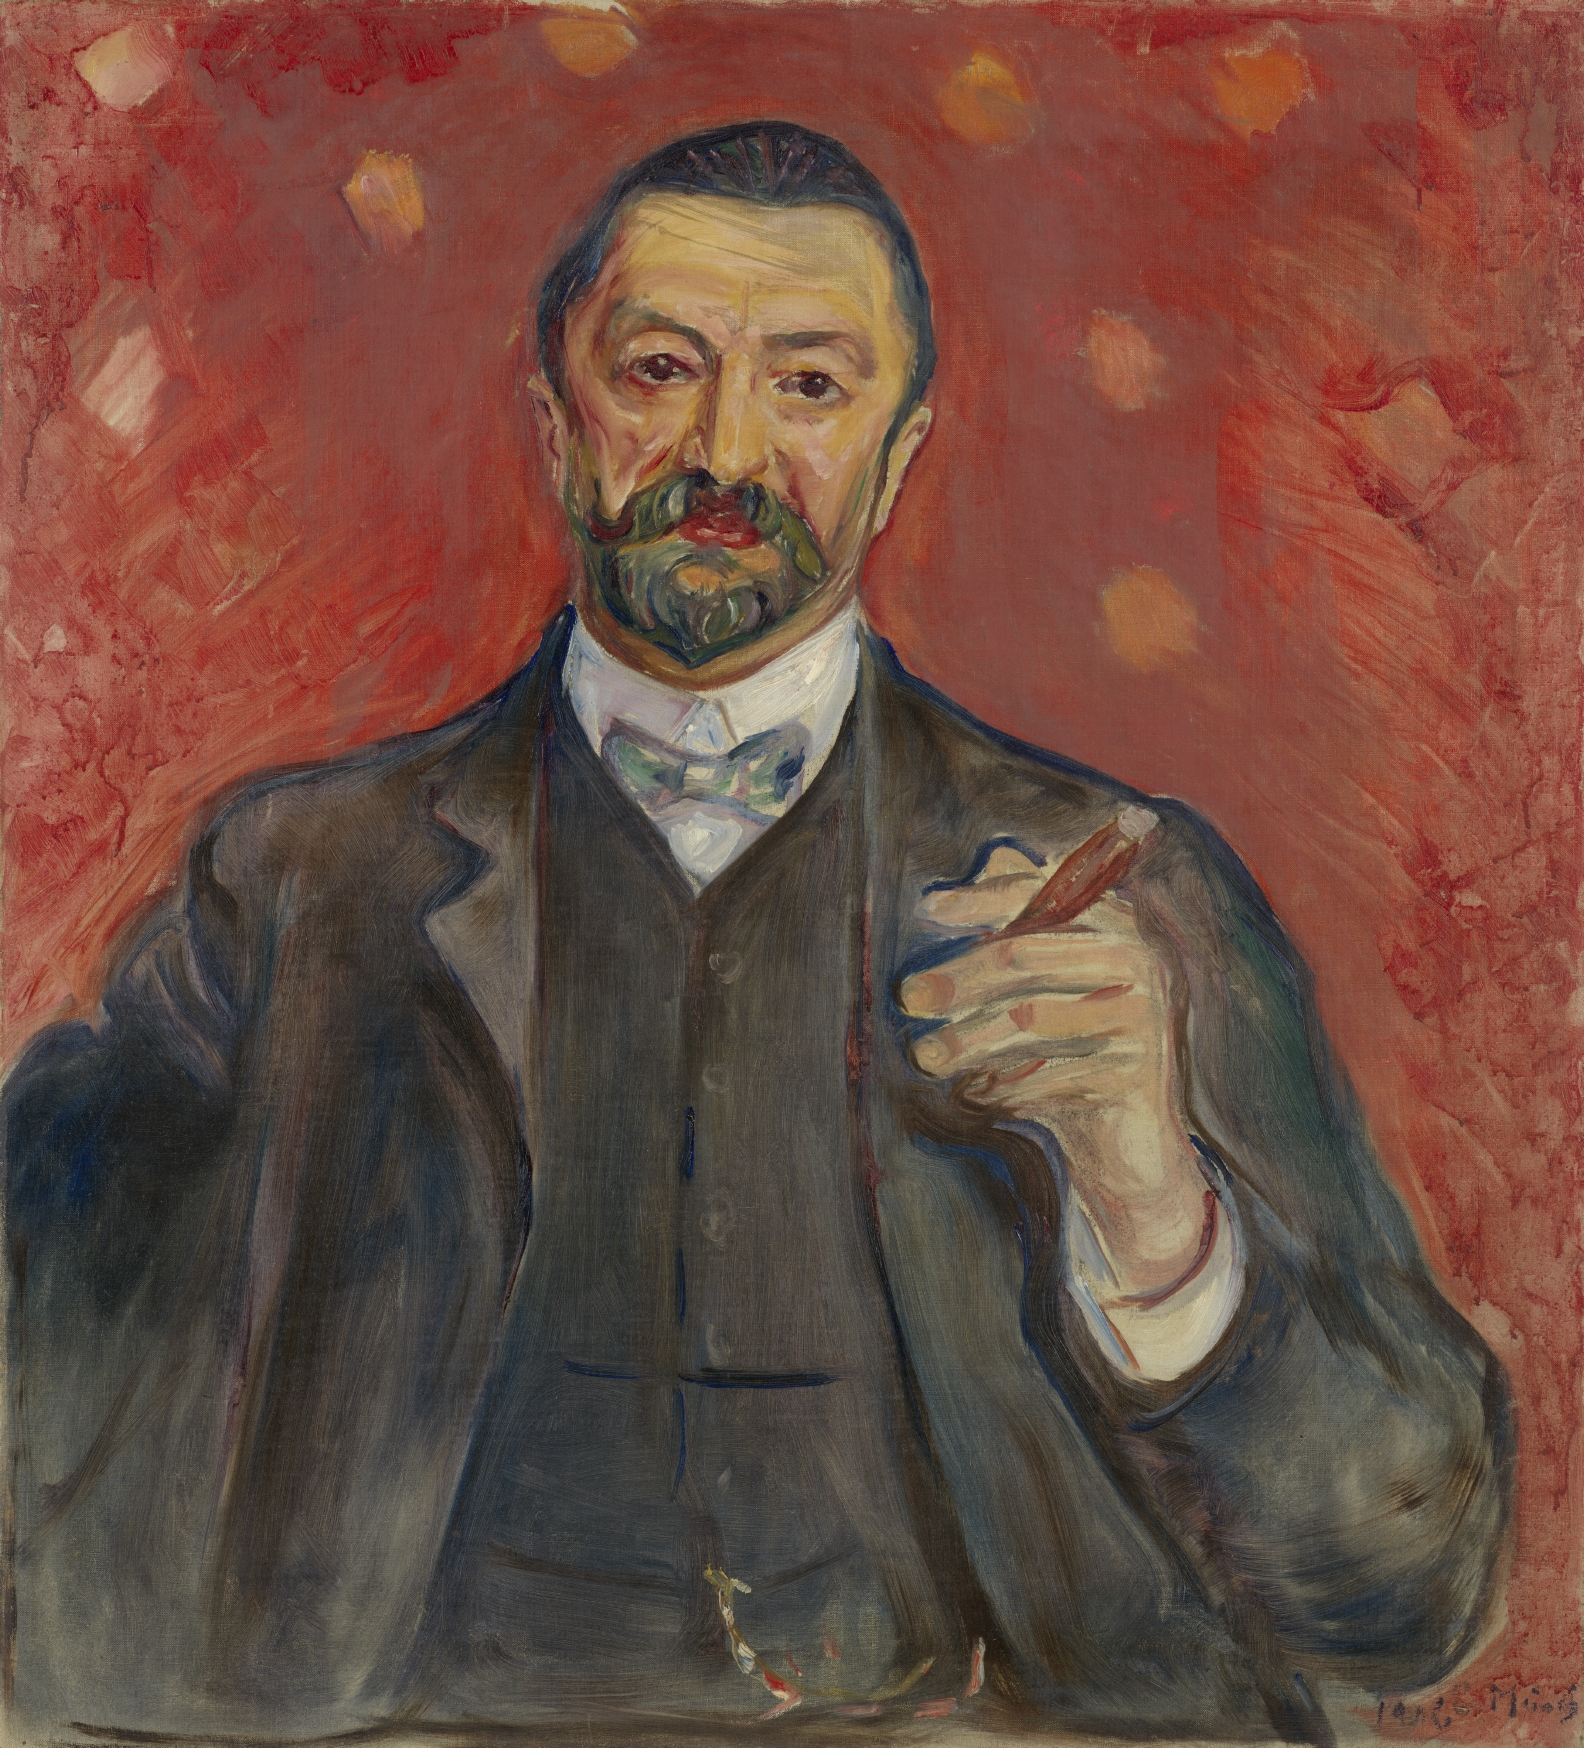 弗裏克·奧爾巴赫的肖像畫 by Edvard Munch - 1906 - 85.4 x 77.1 cm 